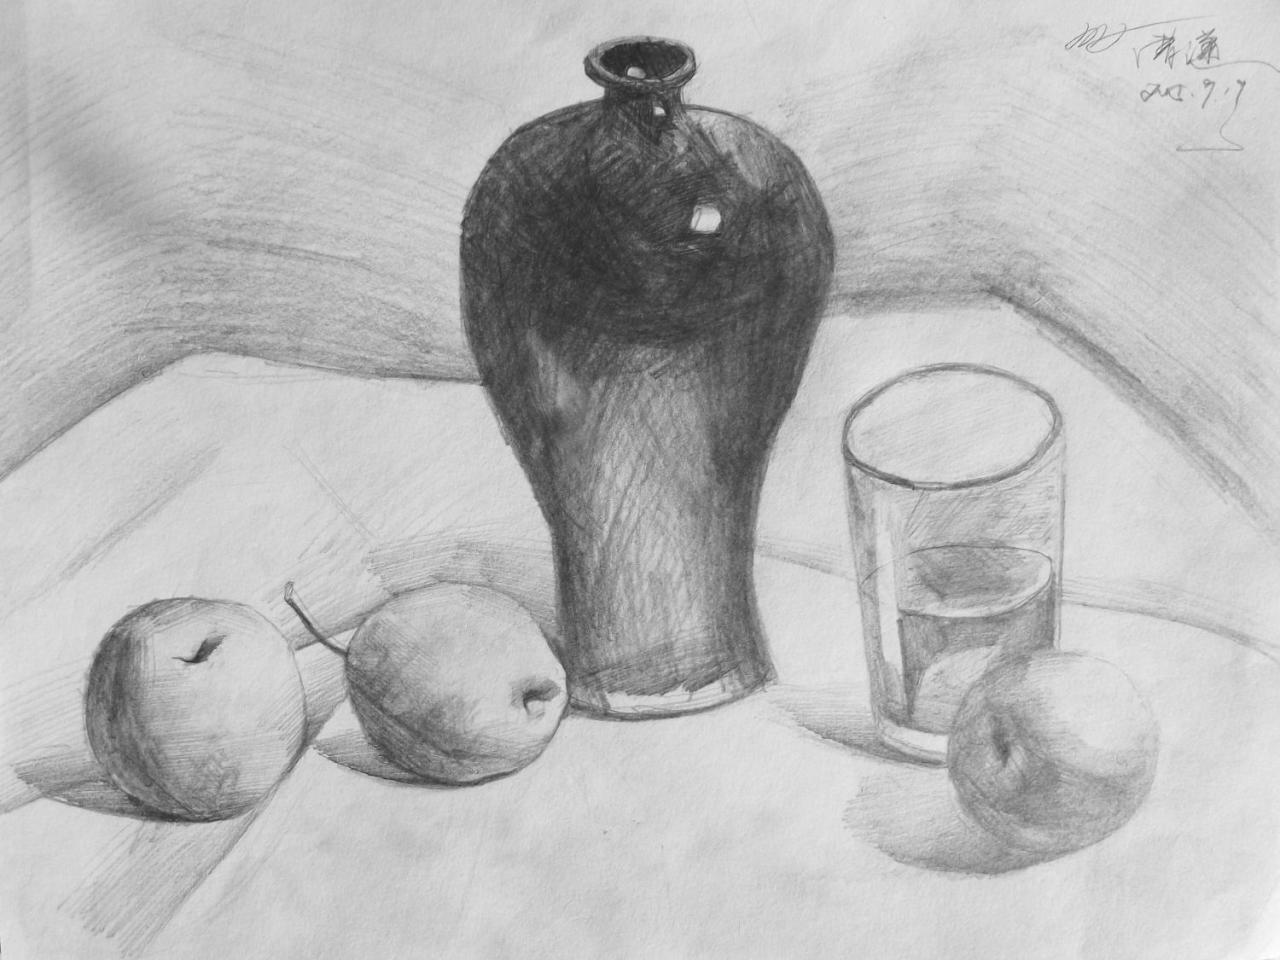 陶罐、水杯、苹果、梨 静物素描 曹潇画